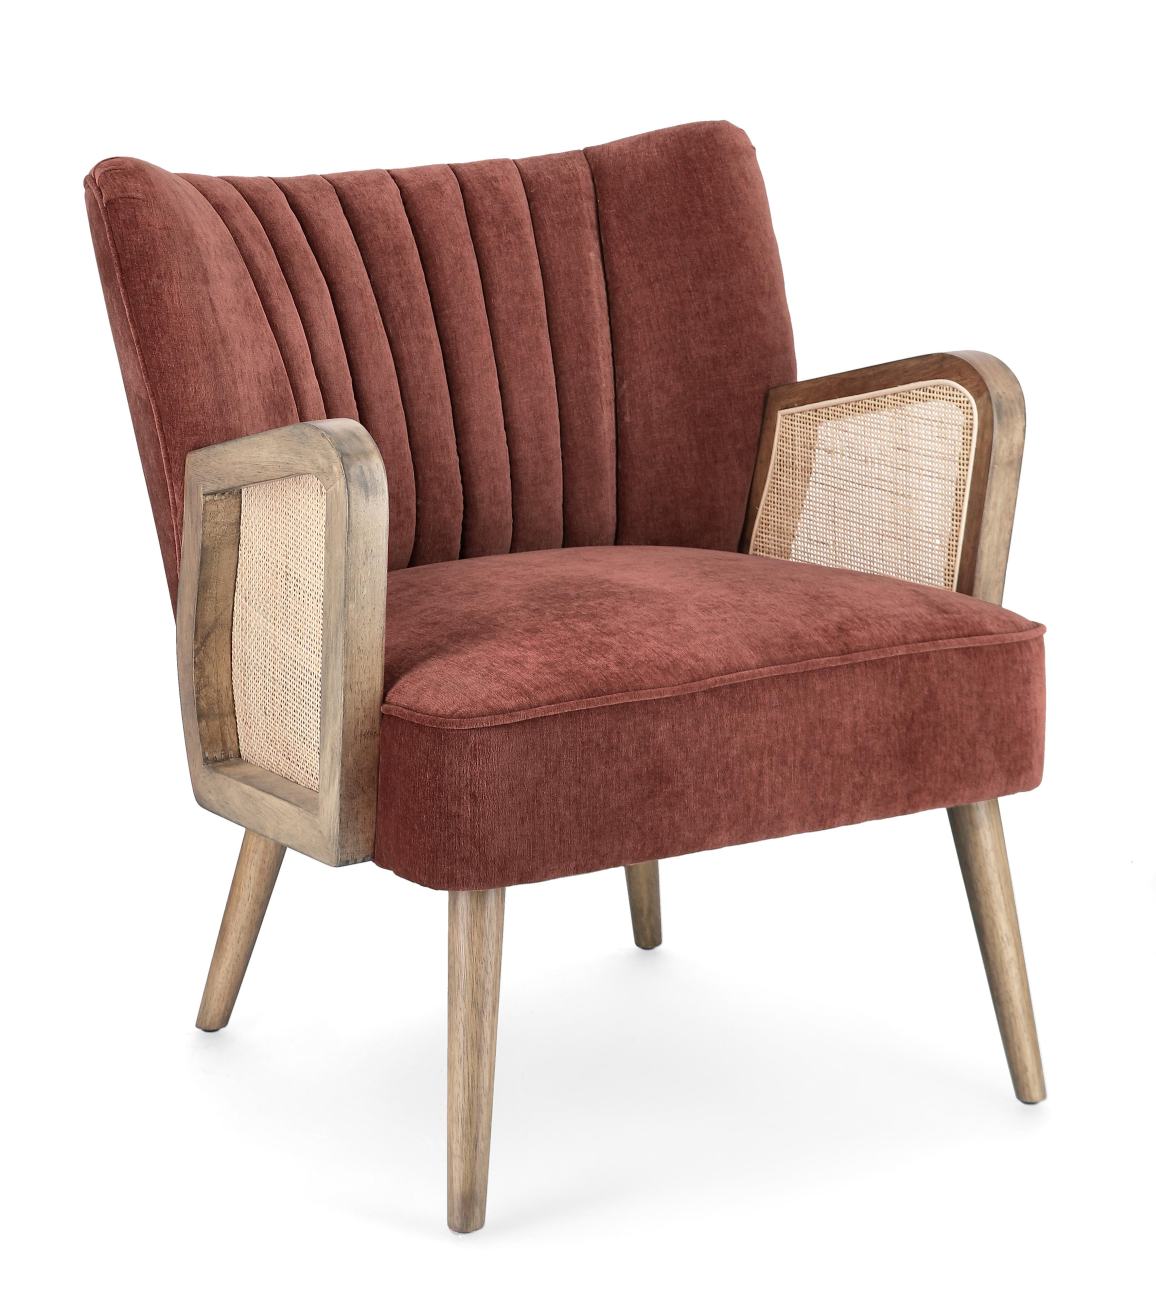 Der Sessel Virna überzeugt mit seinem modernen Stil. Gefertigt wurde er aus einem Stoff-Bezug, welcher einen roten Farbton besitzt. Das Gestell ist aus Kautschukholz und hat eine braune Farbe. Der Sessel verfügt über eine Armlehne.